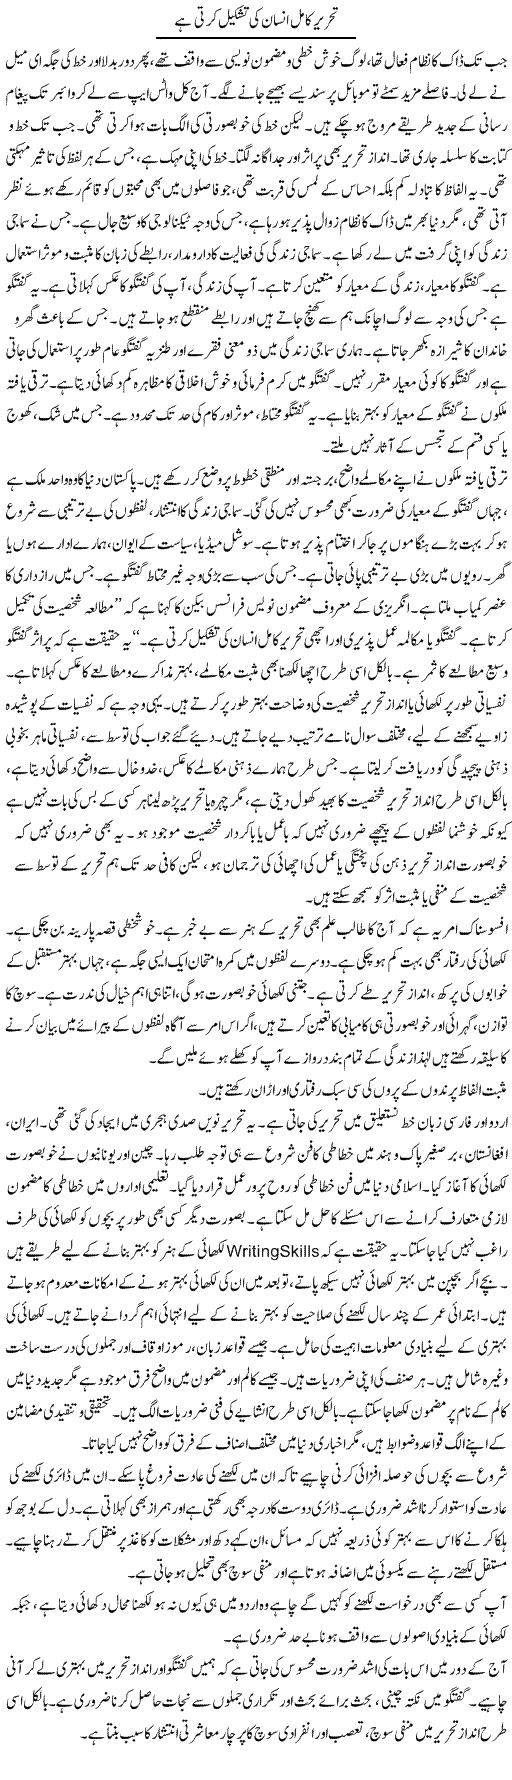 Tehreer Kamil Insan Ki Tashkeel Karti Hai | Shabnam Gull | Daily Urdu Columns